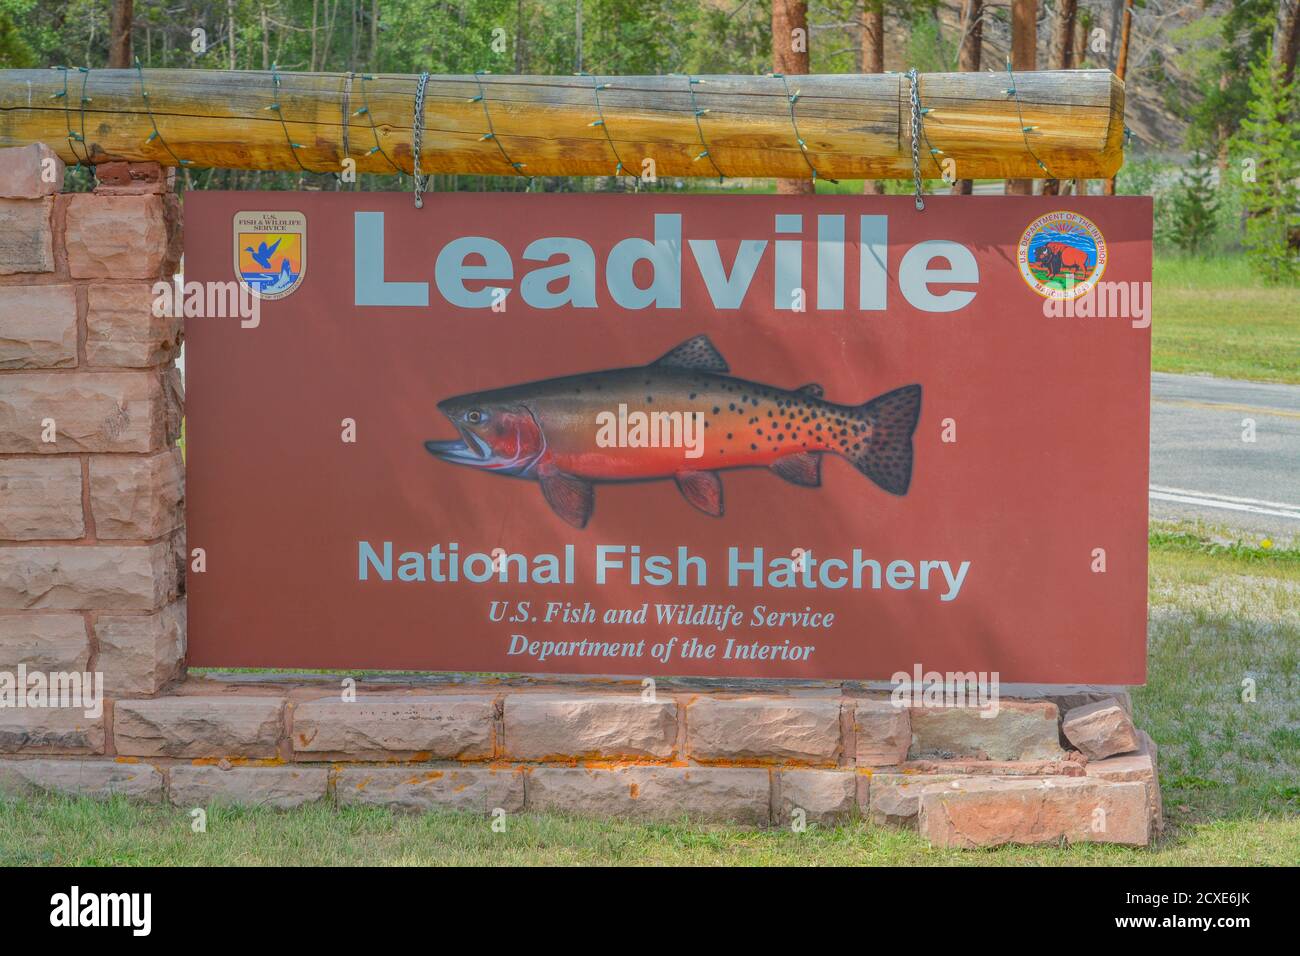 Le panneau pour la station piscicole nationale de Leadville. La truite fardée à dos vert y est cultivée dans les montagnes Rocheuses du Colorado Banque D'Images